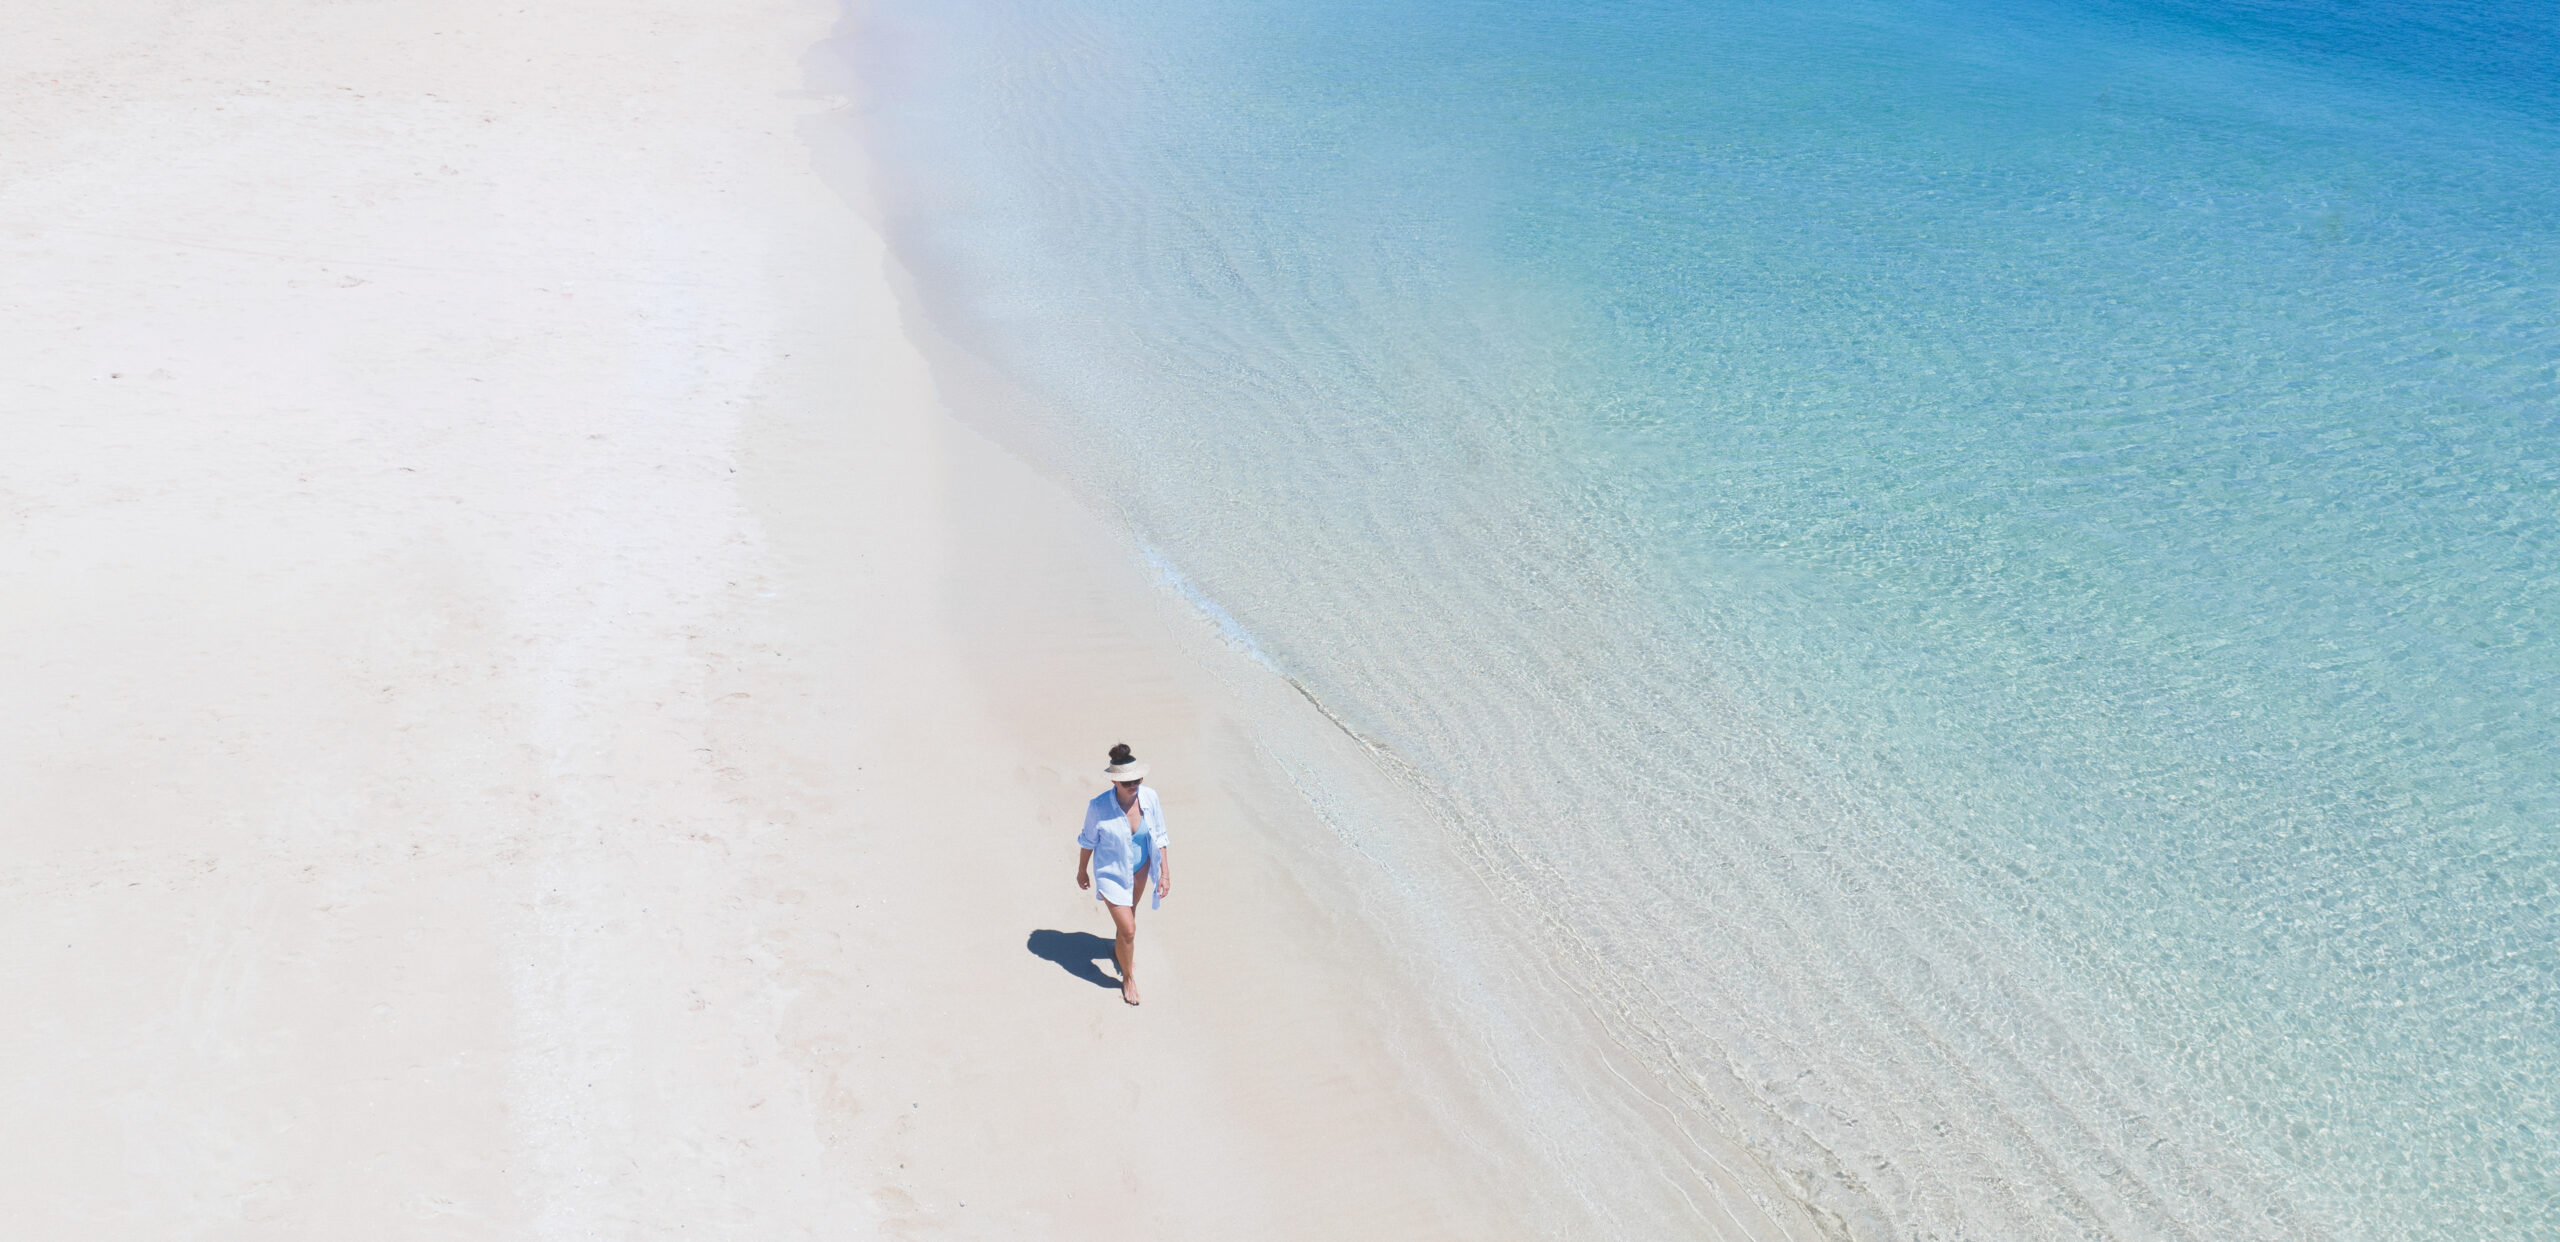 ビーチを歩く1人の空撮写真